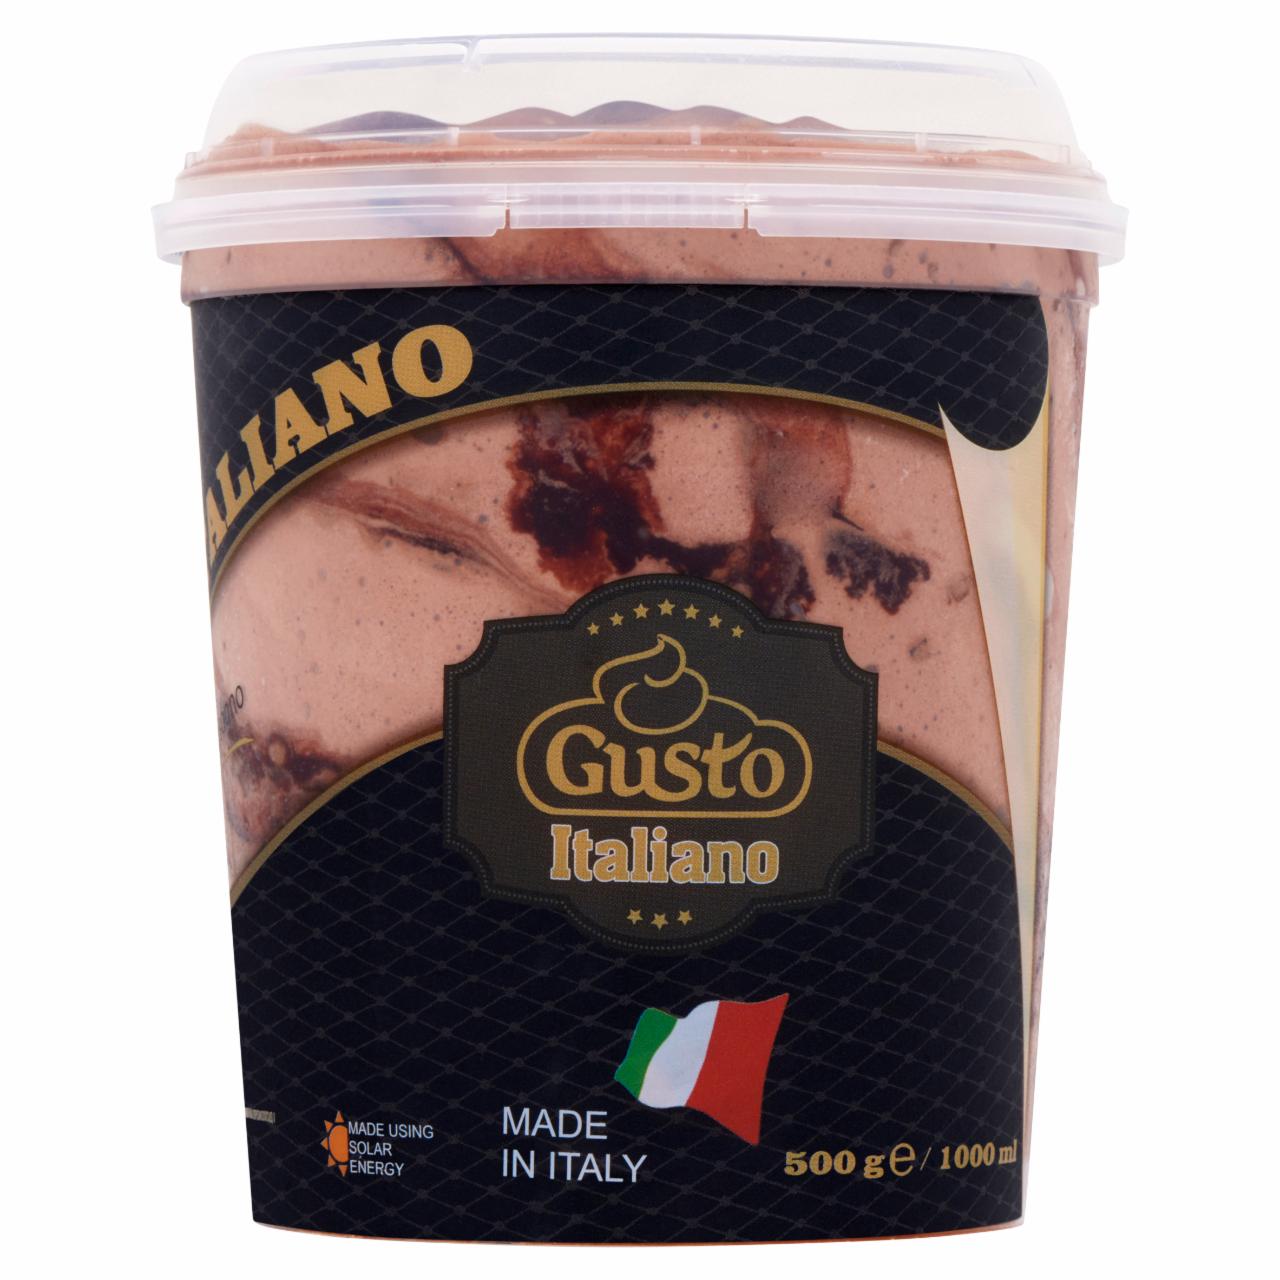 Képek - Gusto Italiano Choco Praliné csokoládé és mogyoró ízű olasz fagylaltkülönlegesség 1000 ml